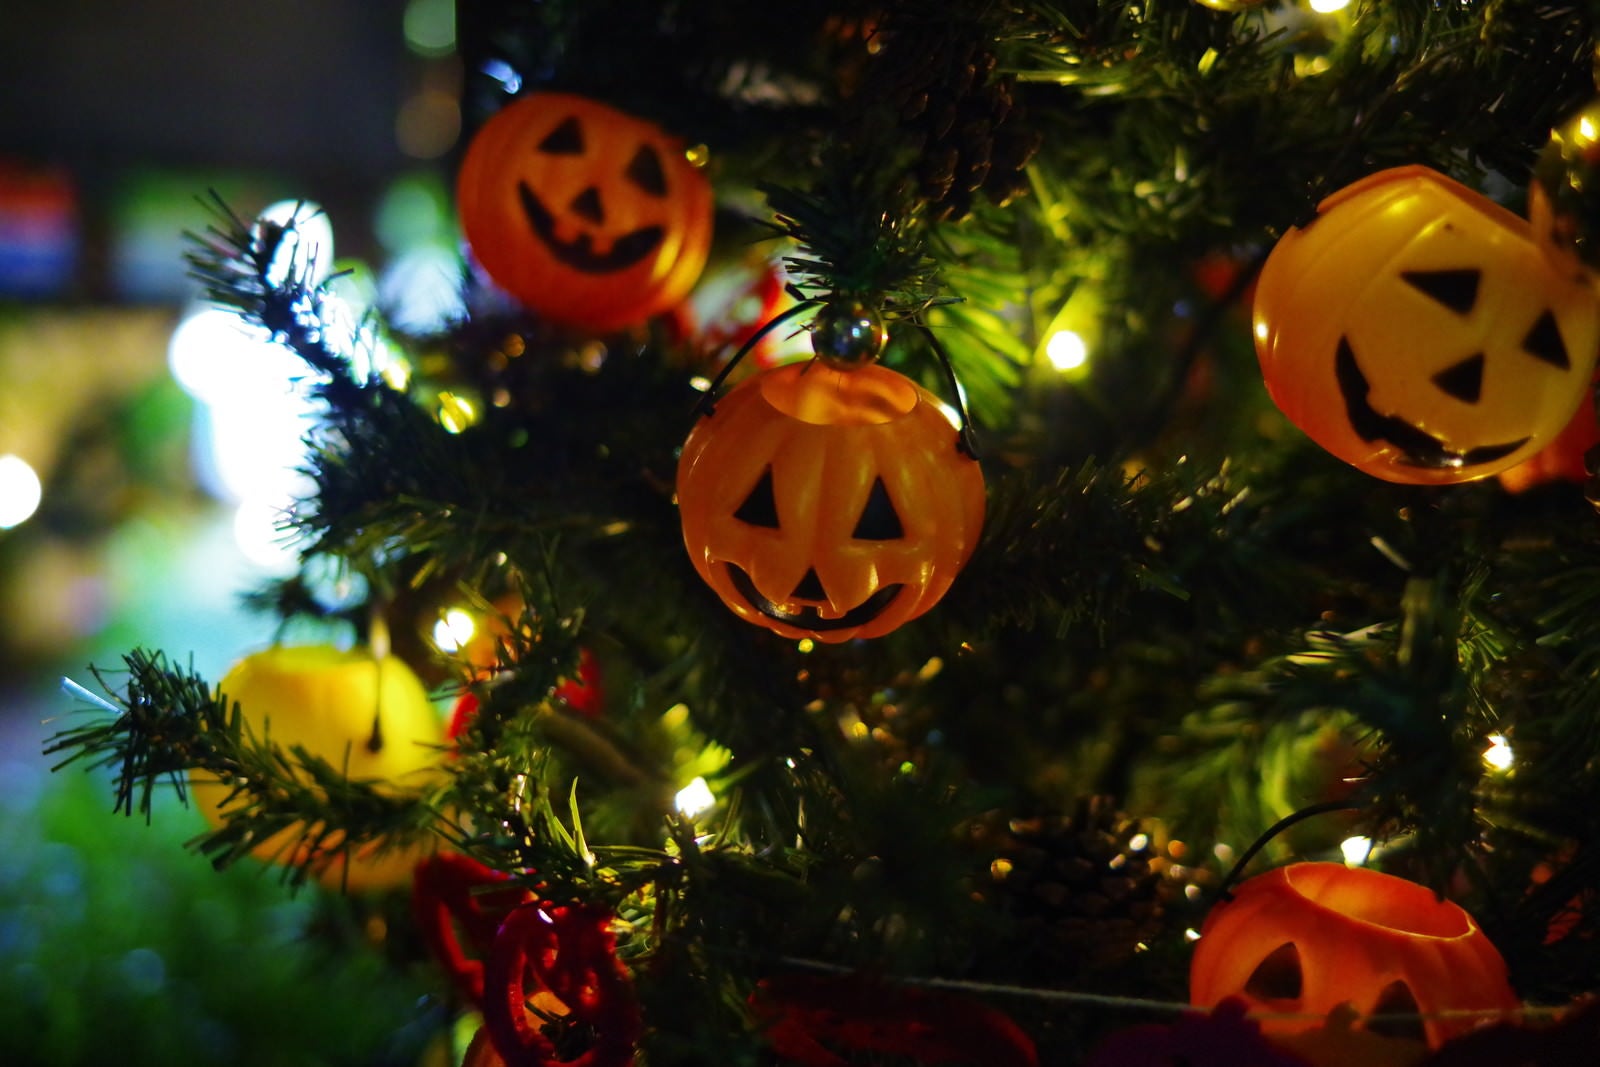 「ツリーに飾られたハロウィンかぼちゃ」の写真